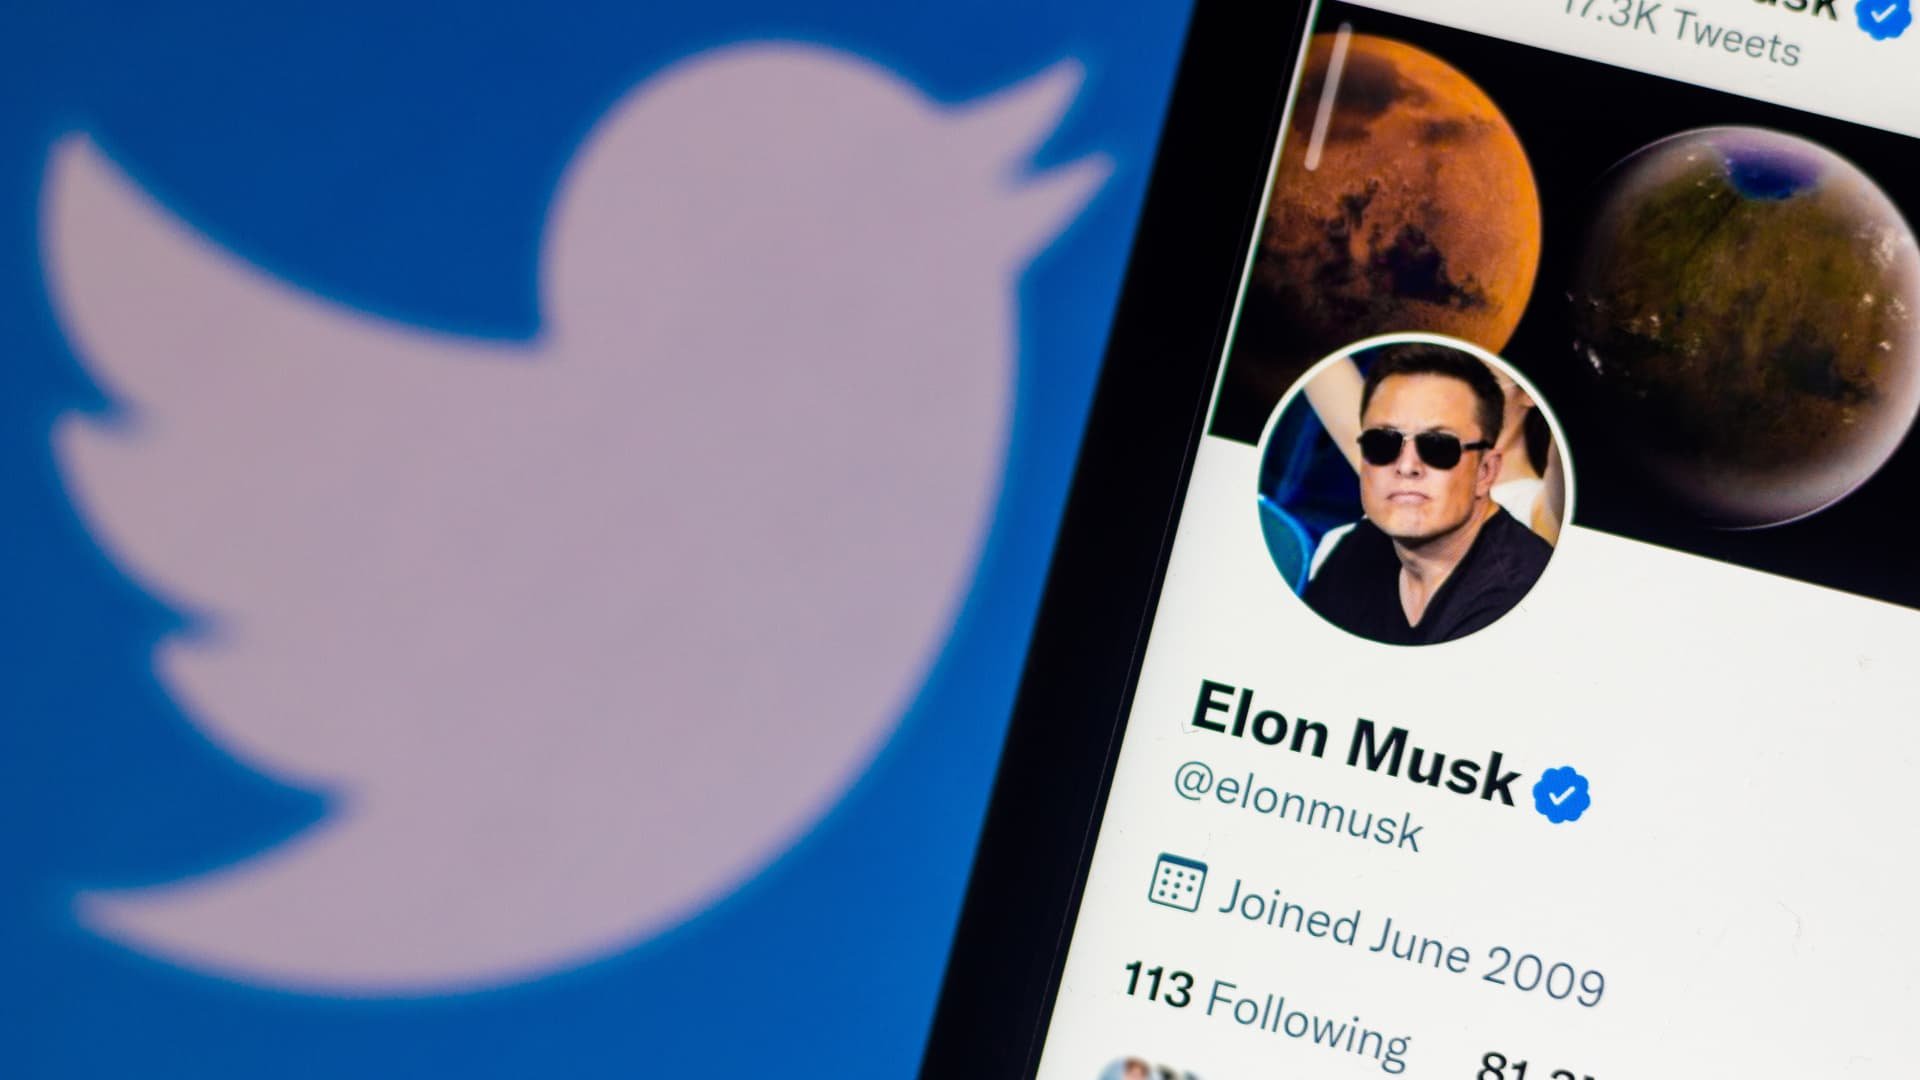  Newsfeed-ul Twitter este acaparat de postări ale lui Elon Musk